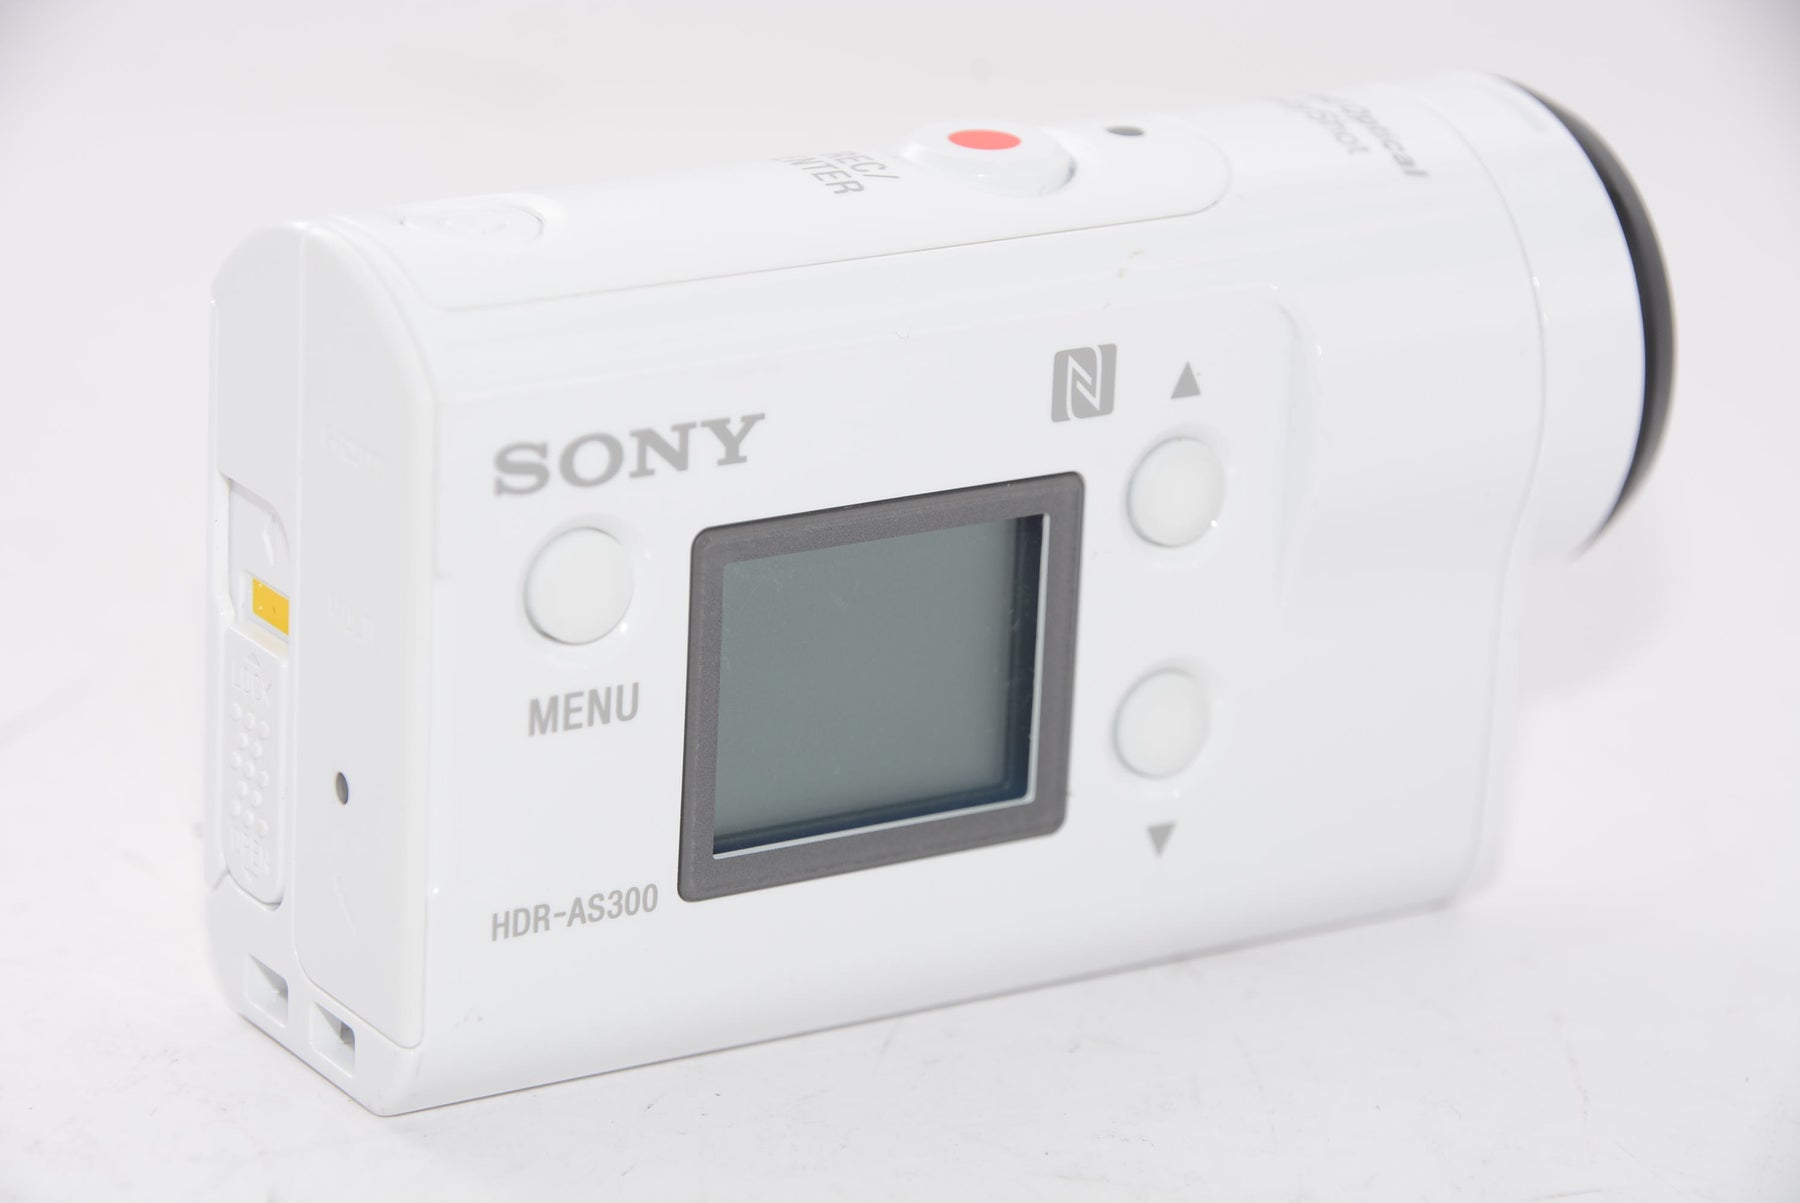 【外観特上級】ソニー SONY ウエアラブルカメラ アクションカム 空間光学ブレ補正搭載モデル(HDR-AS300)